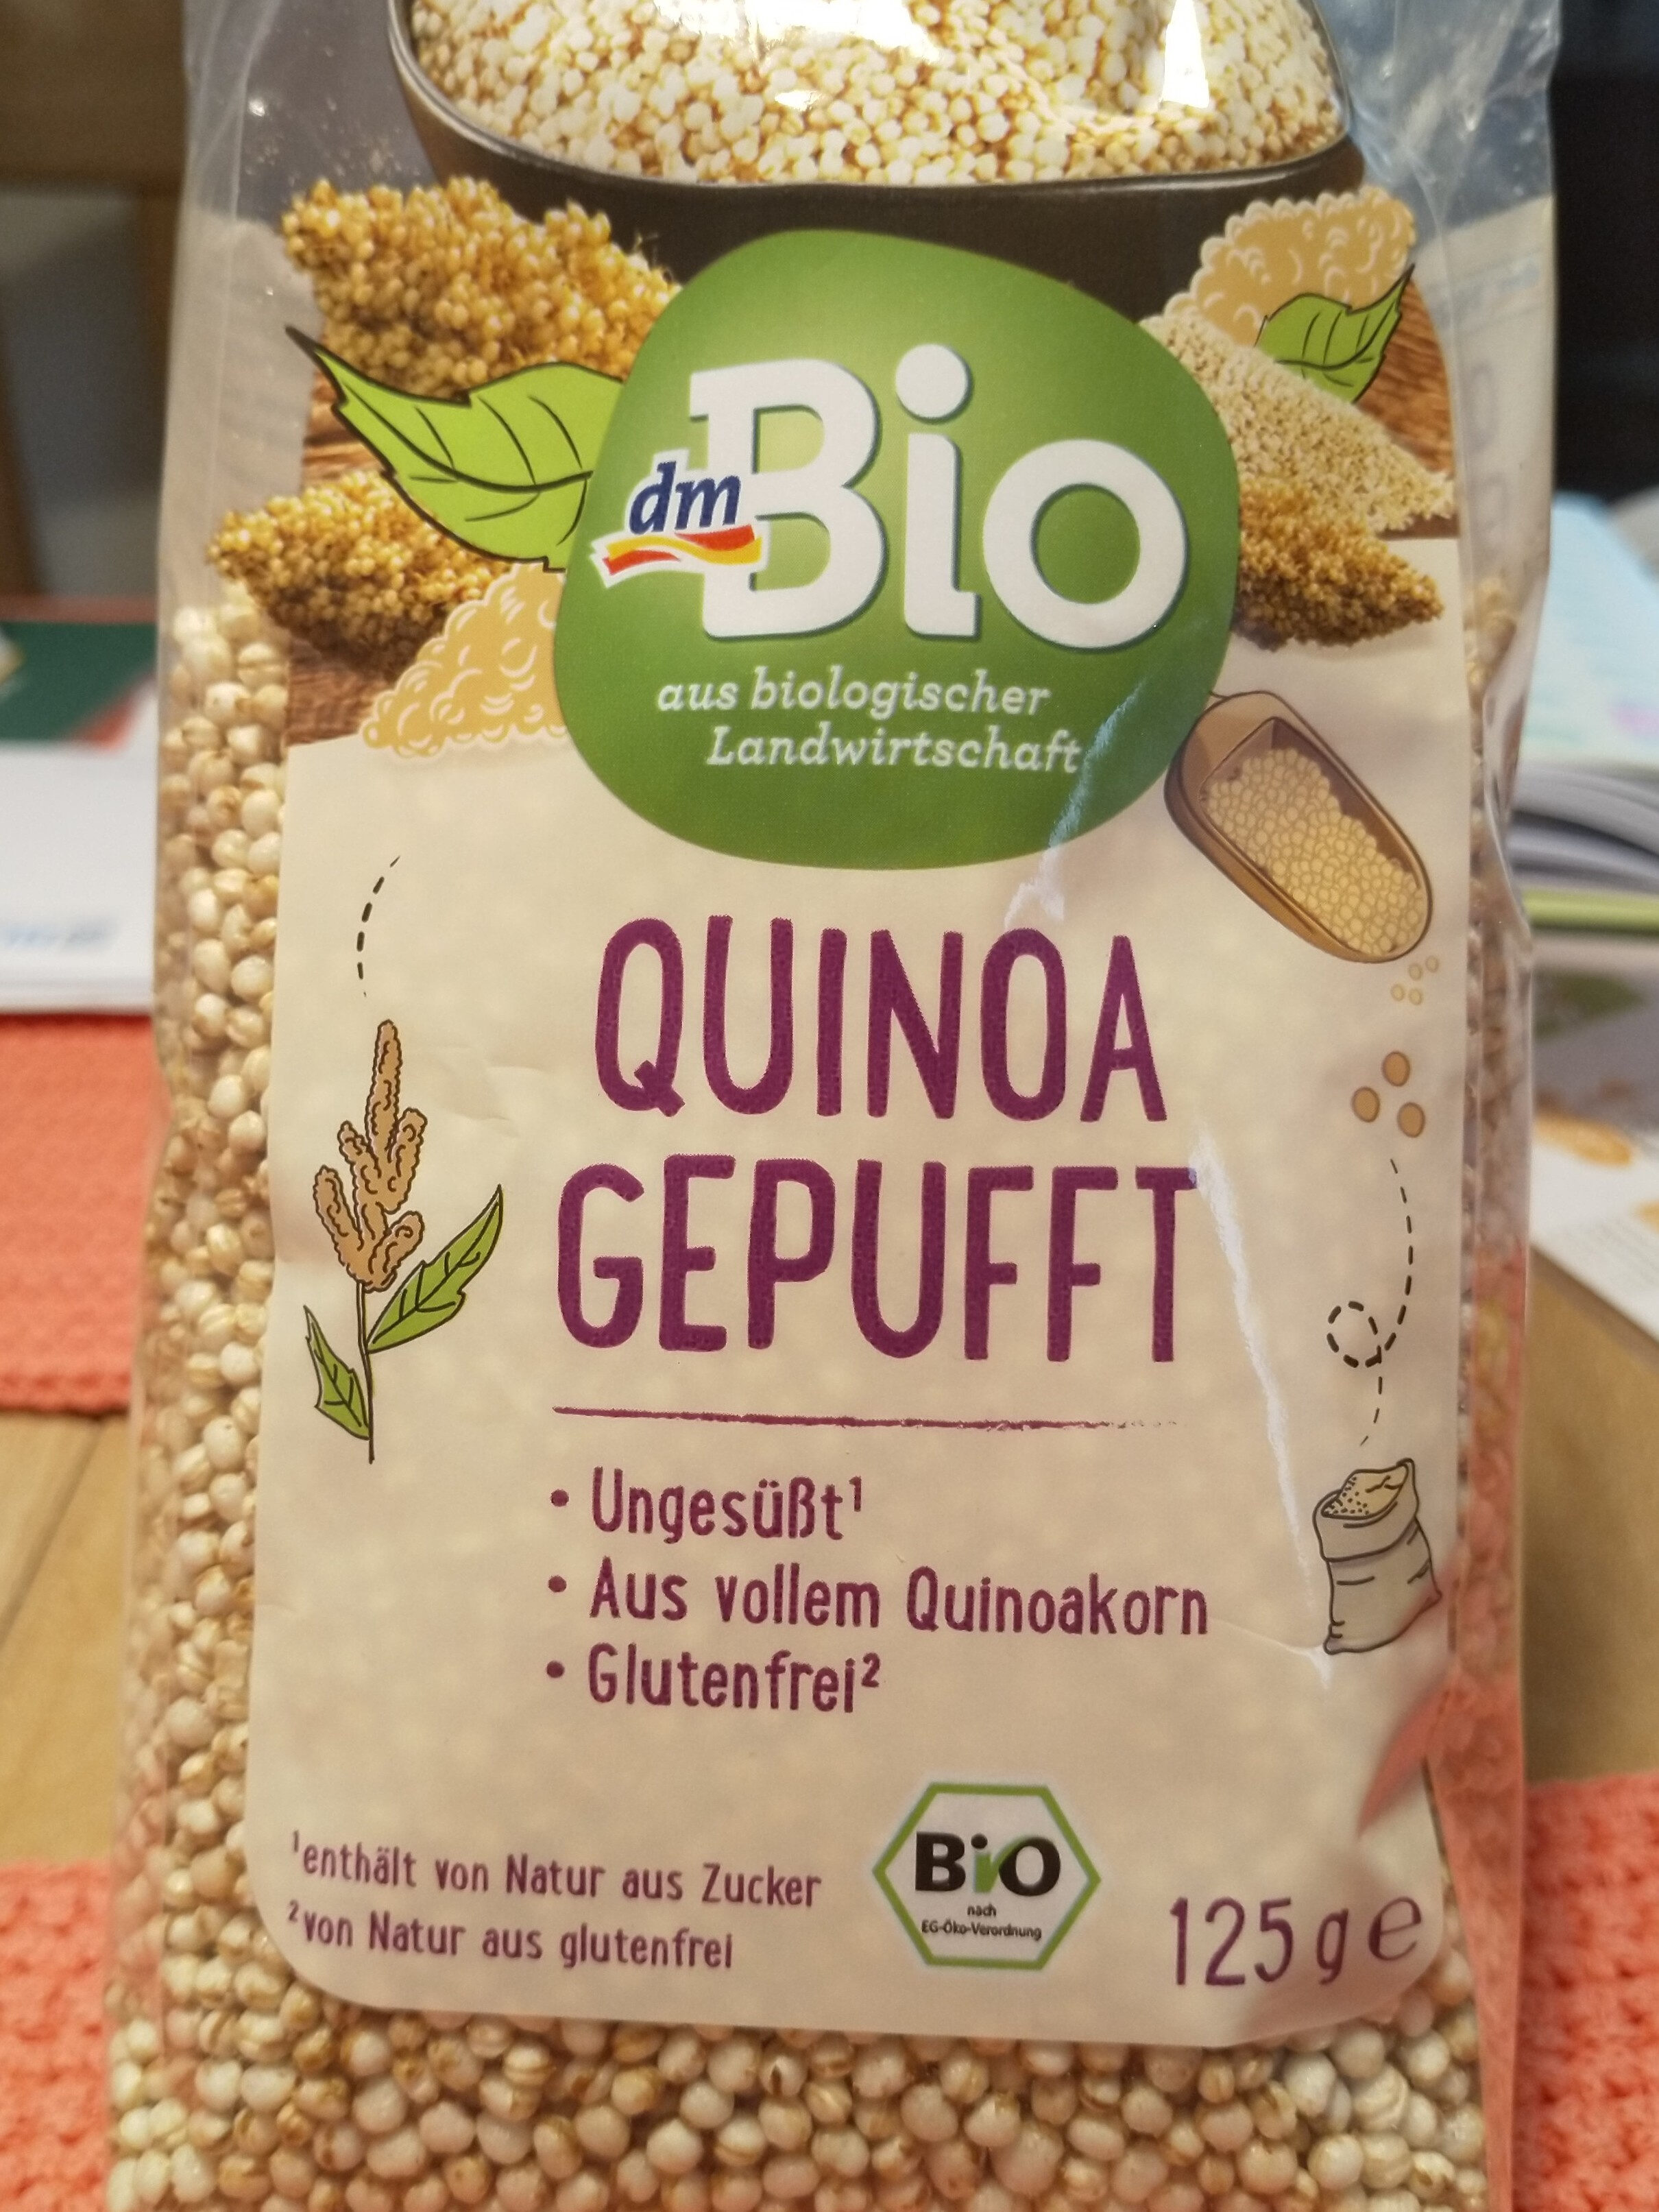 Quinoa gepufft - Product - de